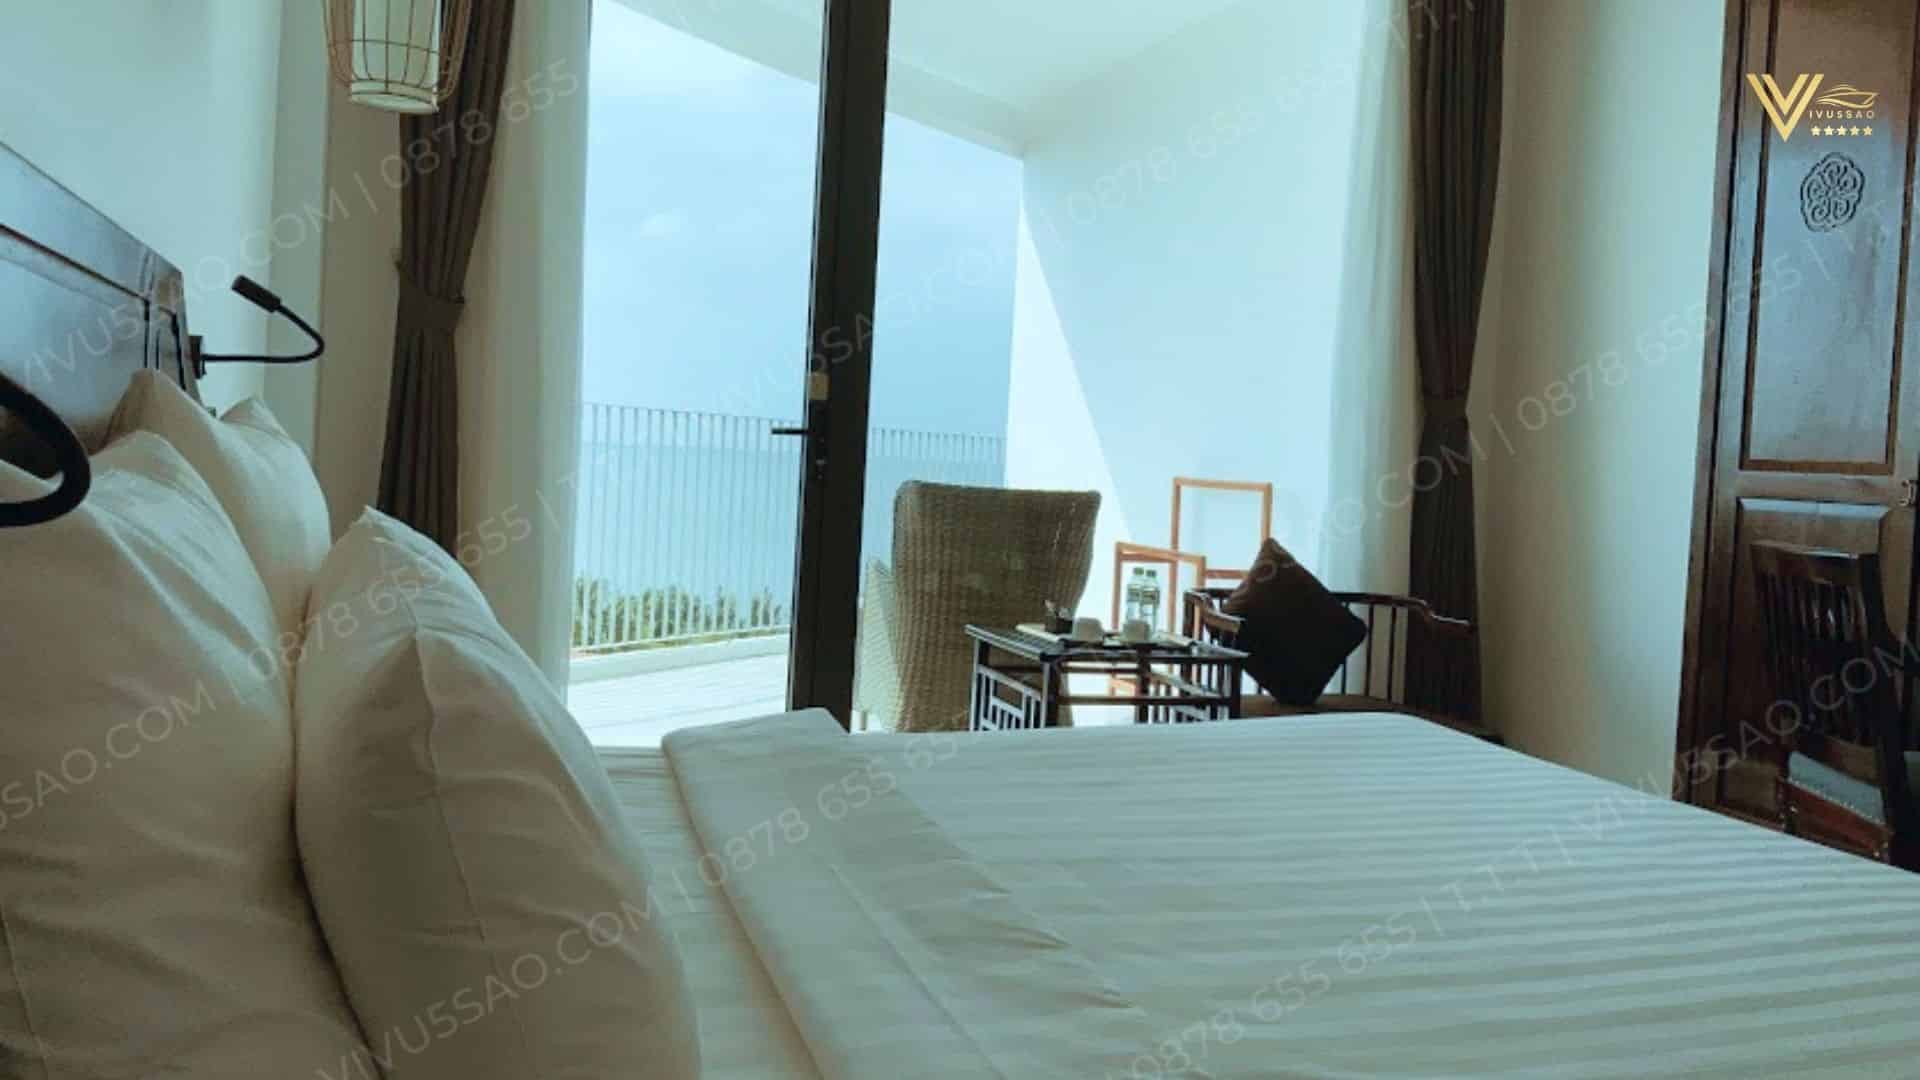 Khám Phá The Palmy Phú Quốc Resort & Spa Năm 2024